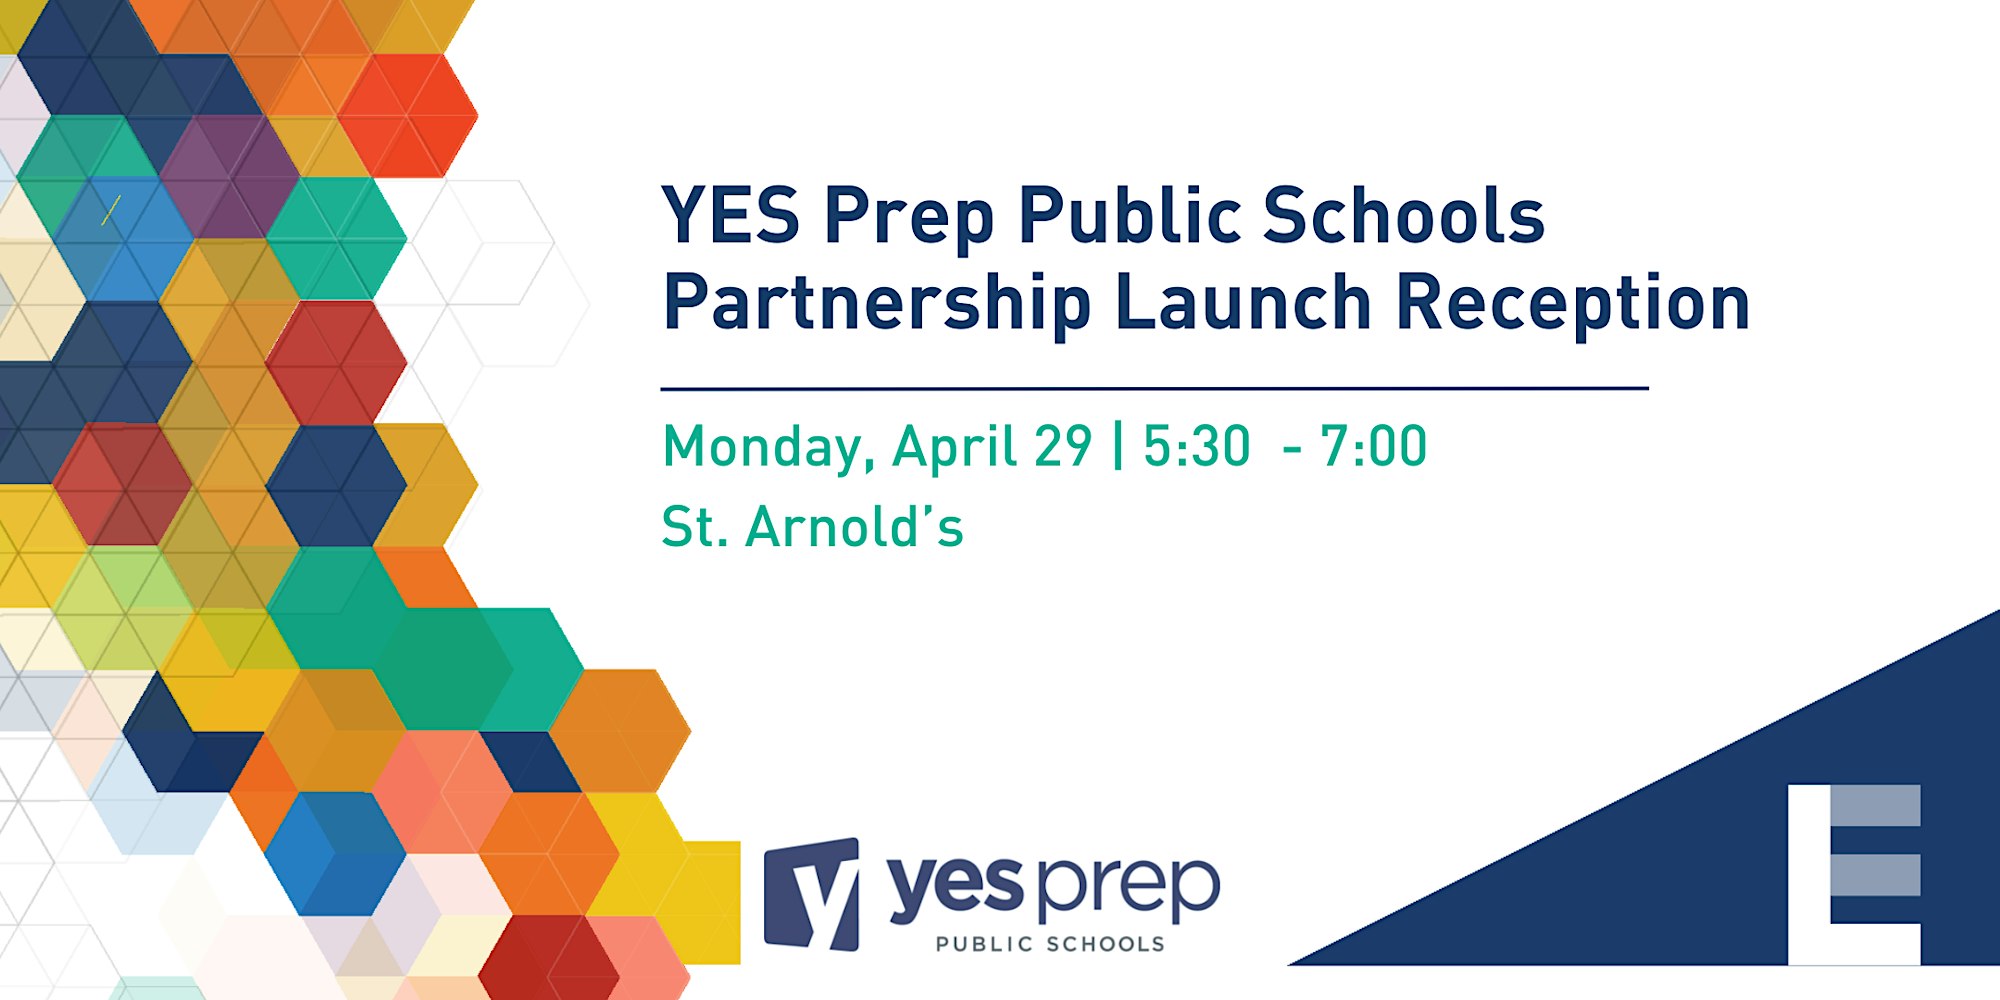 Yes Prep Public Schools Partnership Launch Reception - April 29t 5-7pm St Arnolds